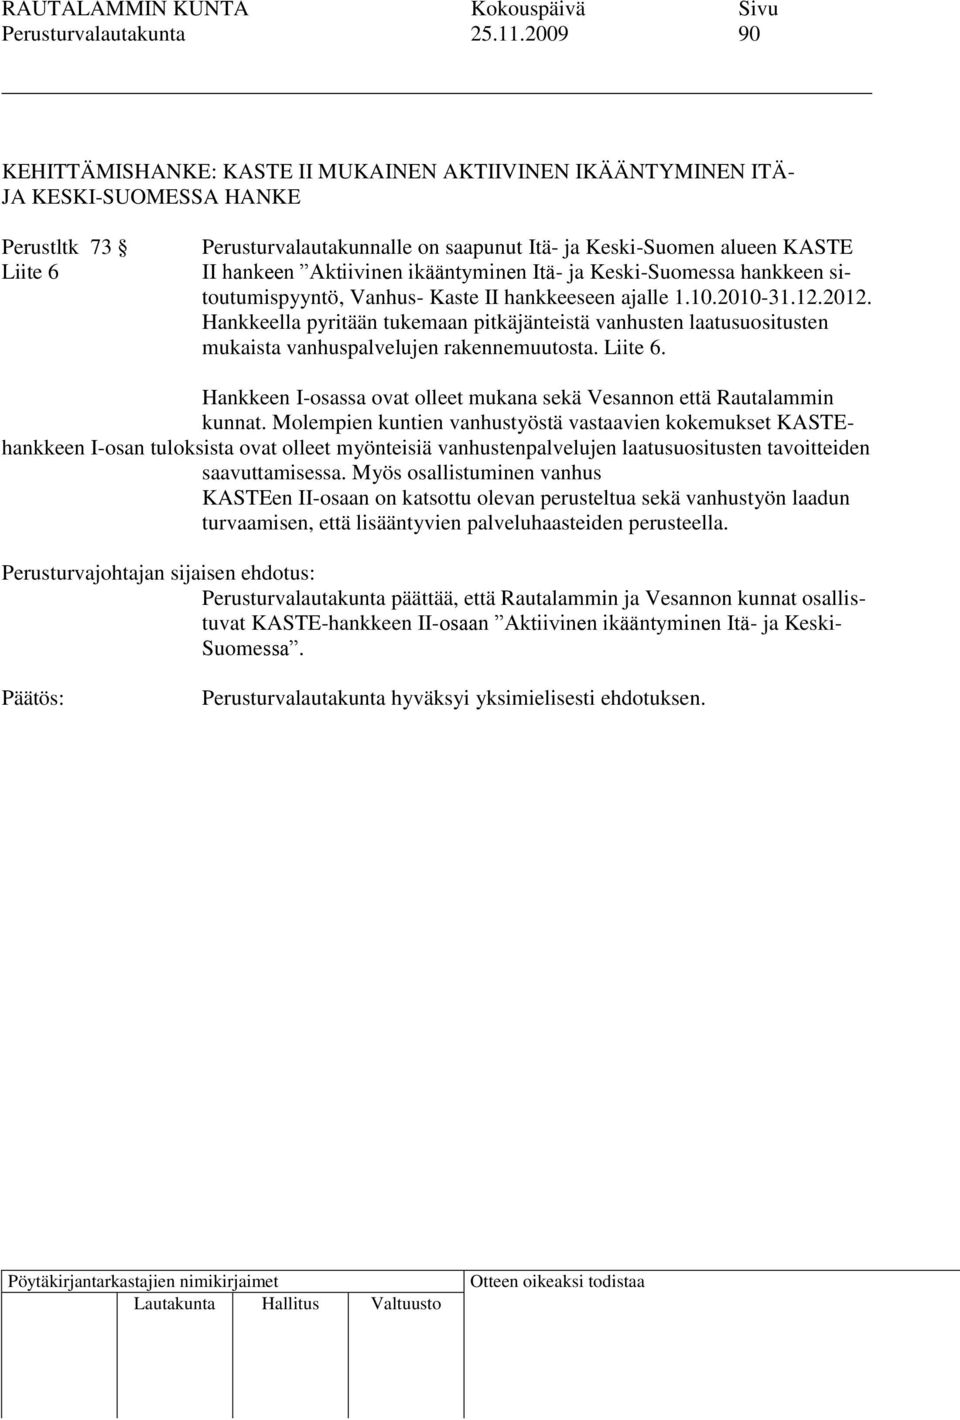 Aktiivinen ikääntyminen Itä- ja Keski-Suomessa hankkeen sitoutumispyyntö, Vanhus- Kaste II hankkeeseen ajalle 1.10.2010-31.12.2012.